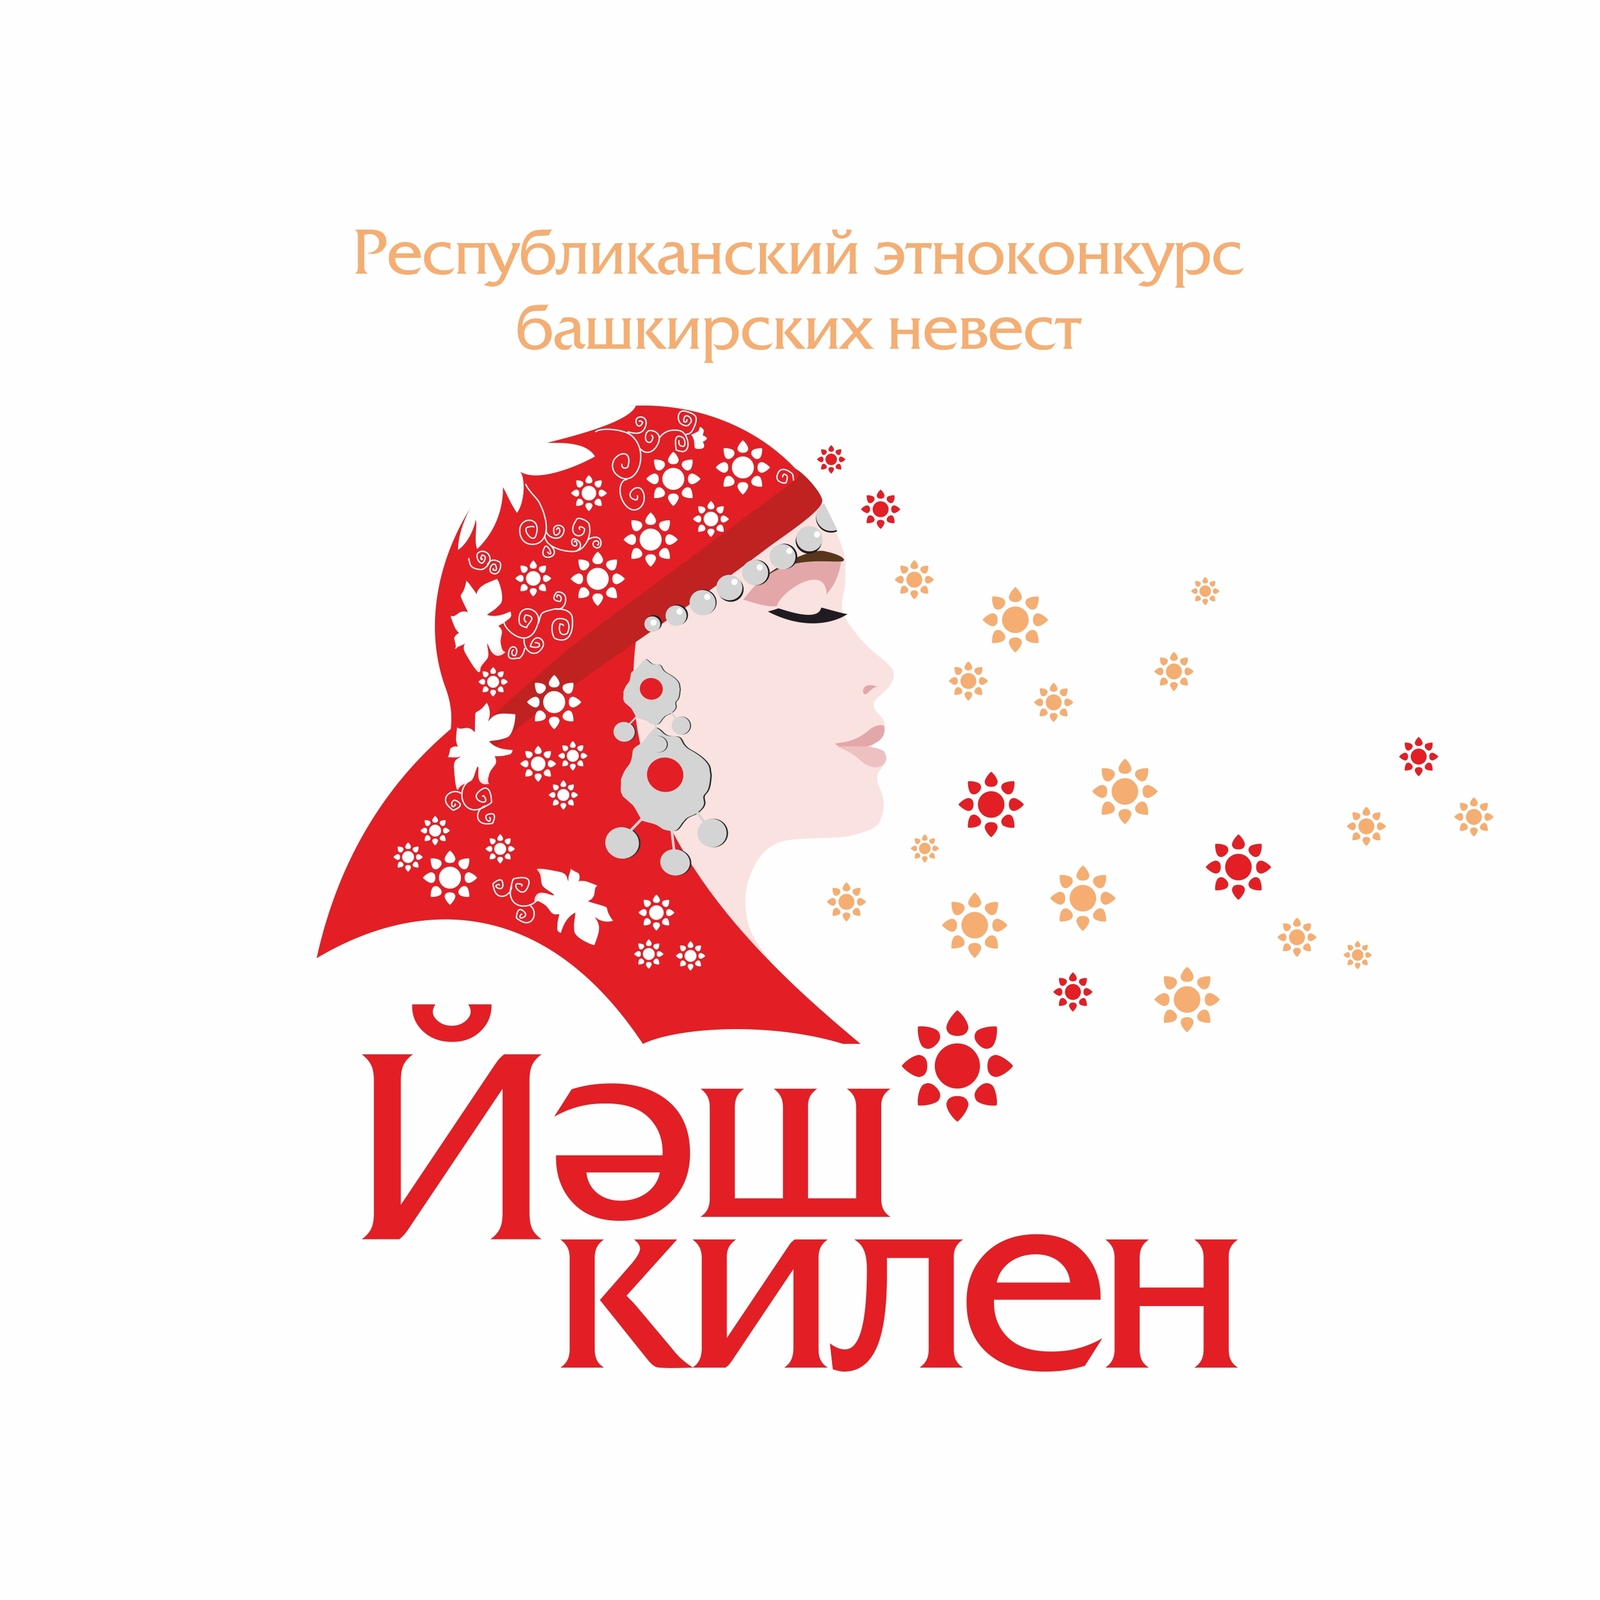 Продолжается прием заявок на участие в Республиканском этноконкурсе башкирских невест «Йәш килен»